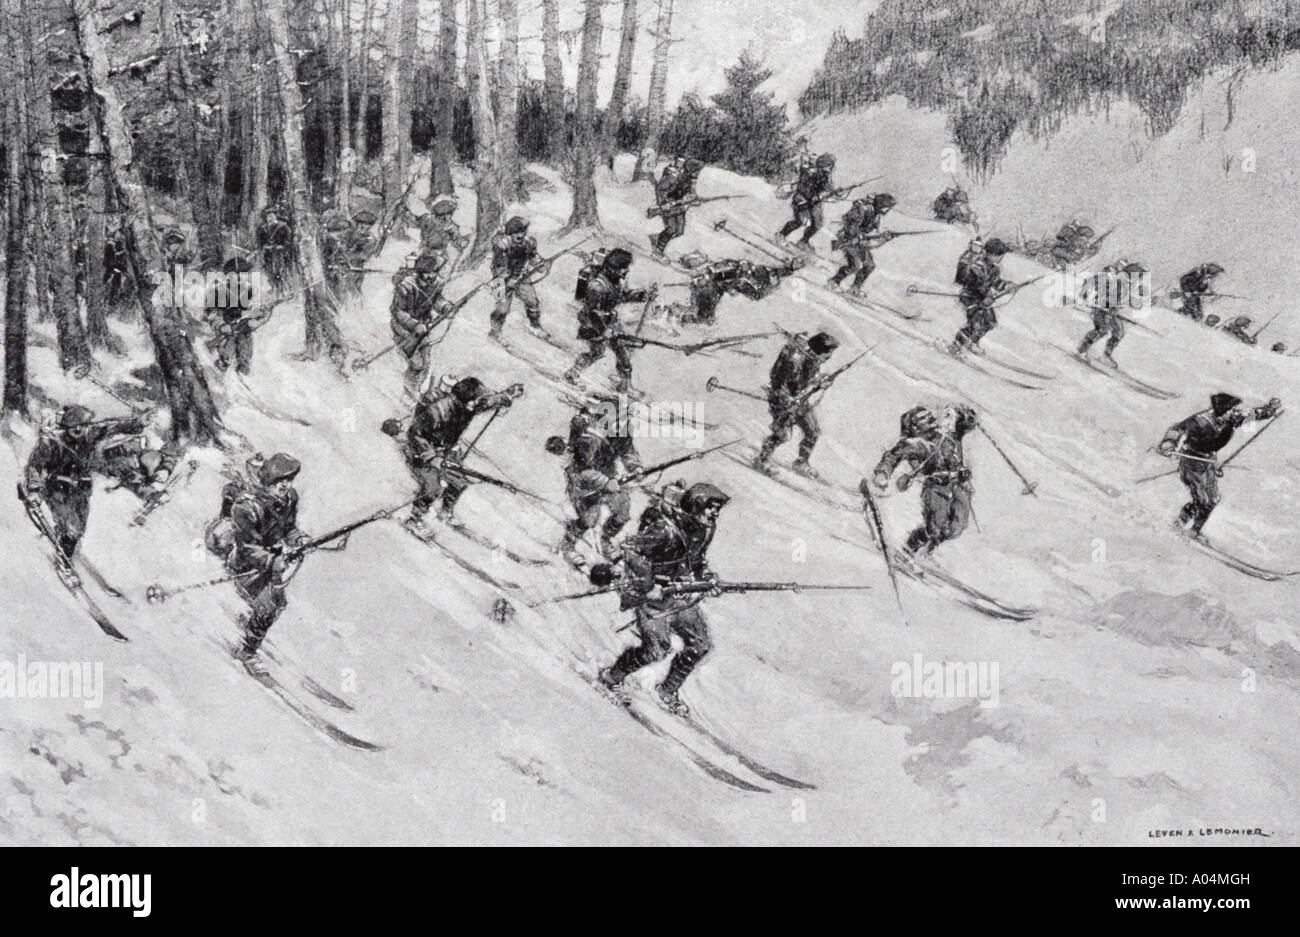 Französische Alpentruppen, die im ersten Weltkrieg auf Skiern angreifen. Aus der Zeitschrift L'Illustration, 1915. Künstler Lever Lemonier. Stockfoto